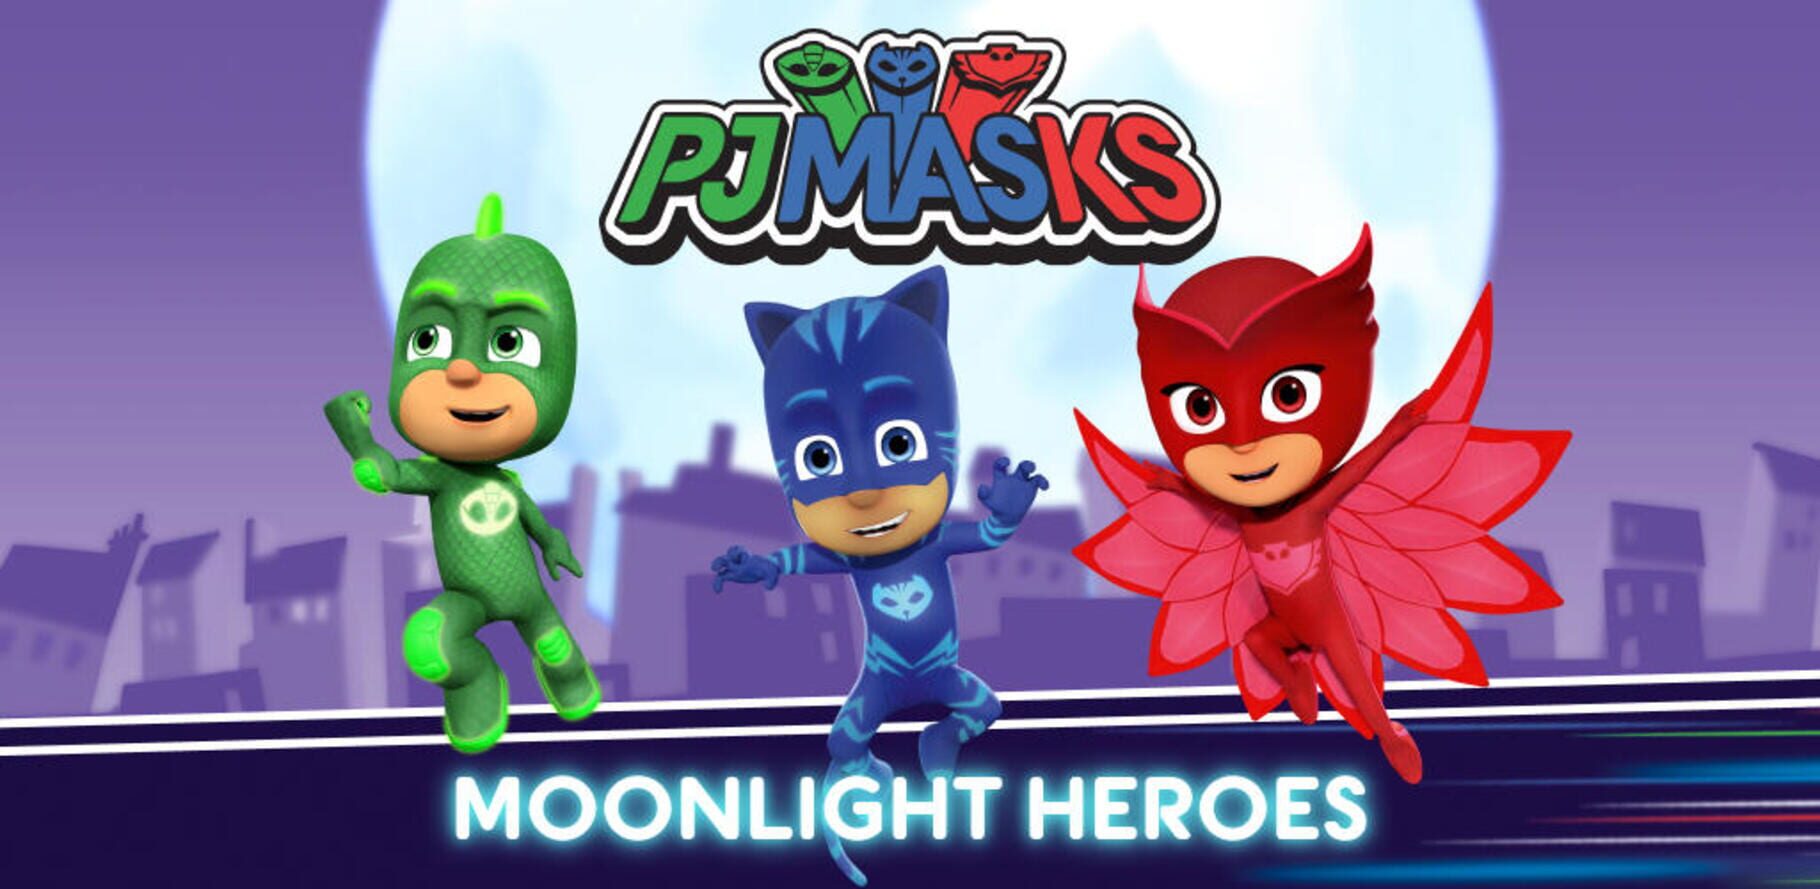 PJ Masks: Moonlight Heroes Image